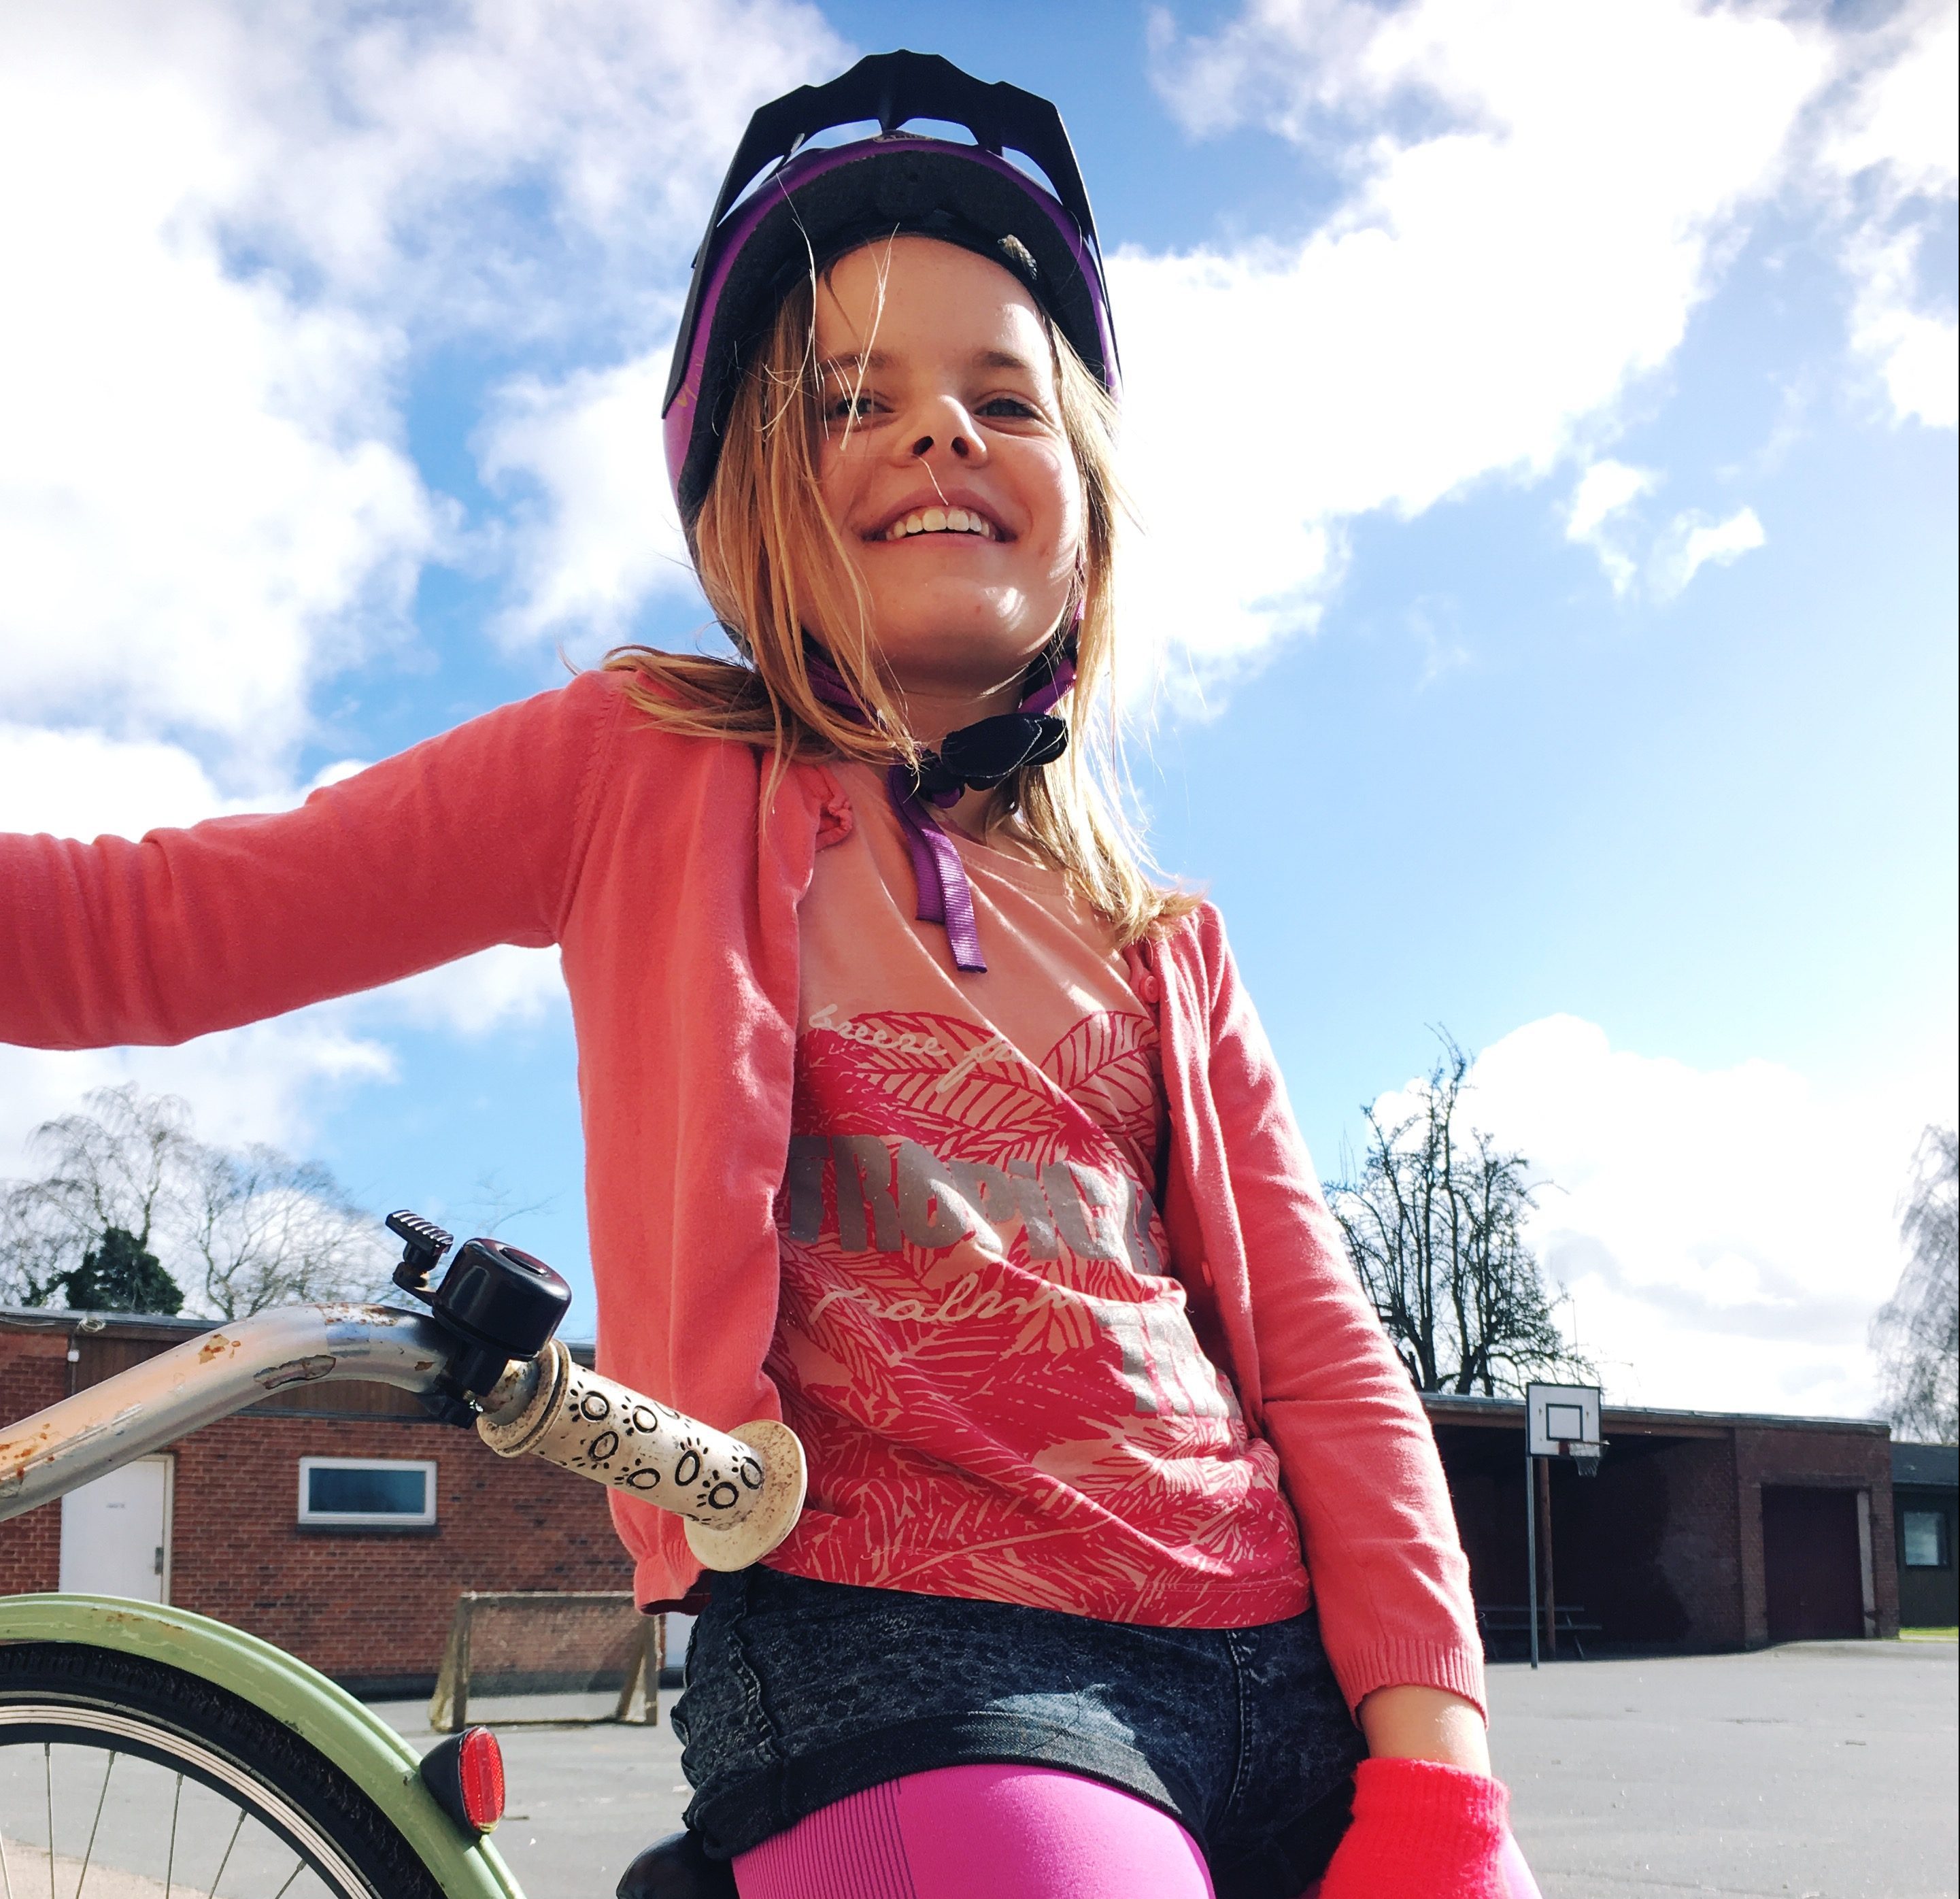 Pige med cykelhjelm og cykel, solskinsdag